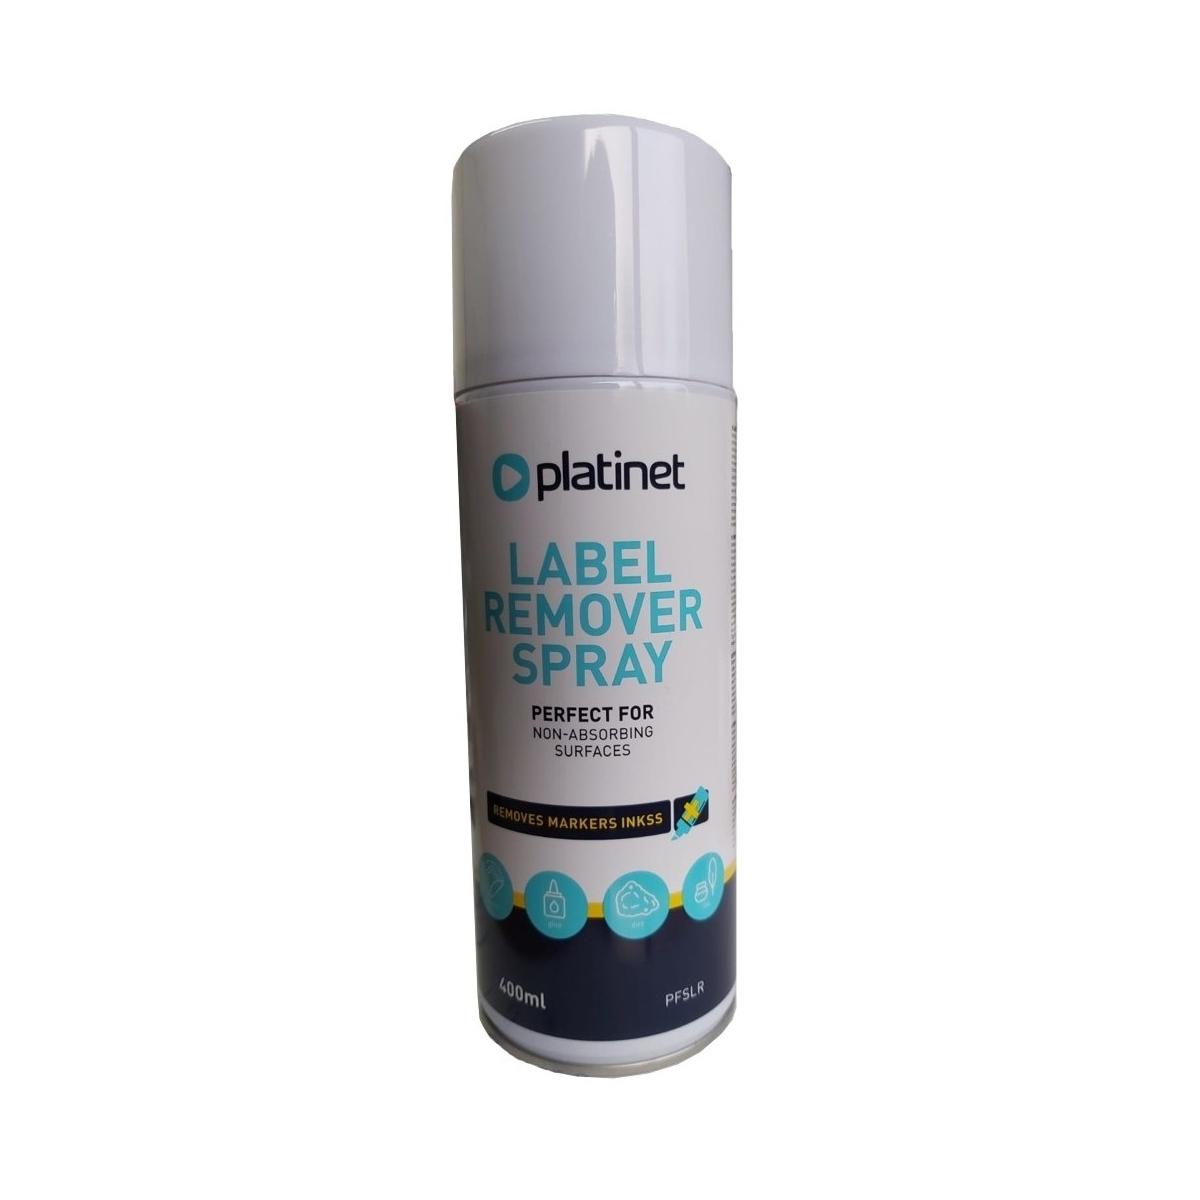 Platinet PFSLR Label Remover Spray 400мл